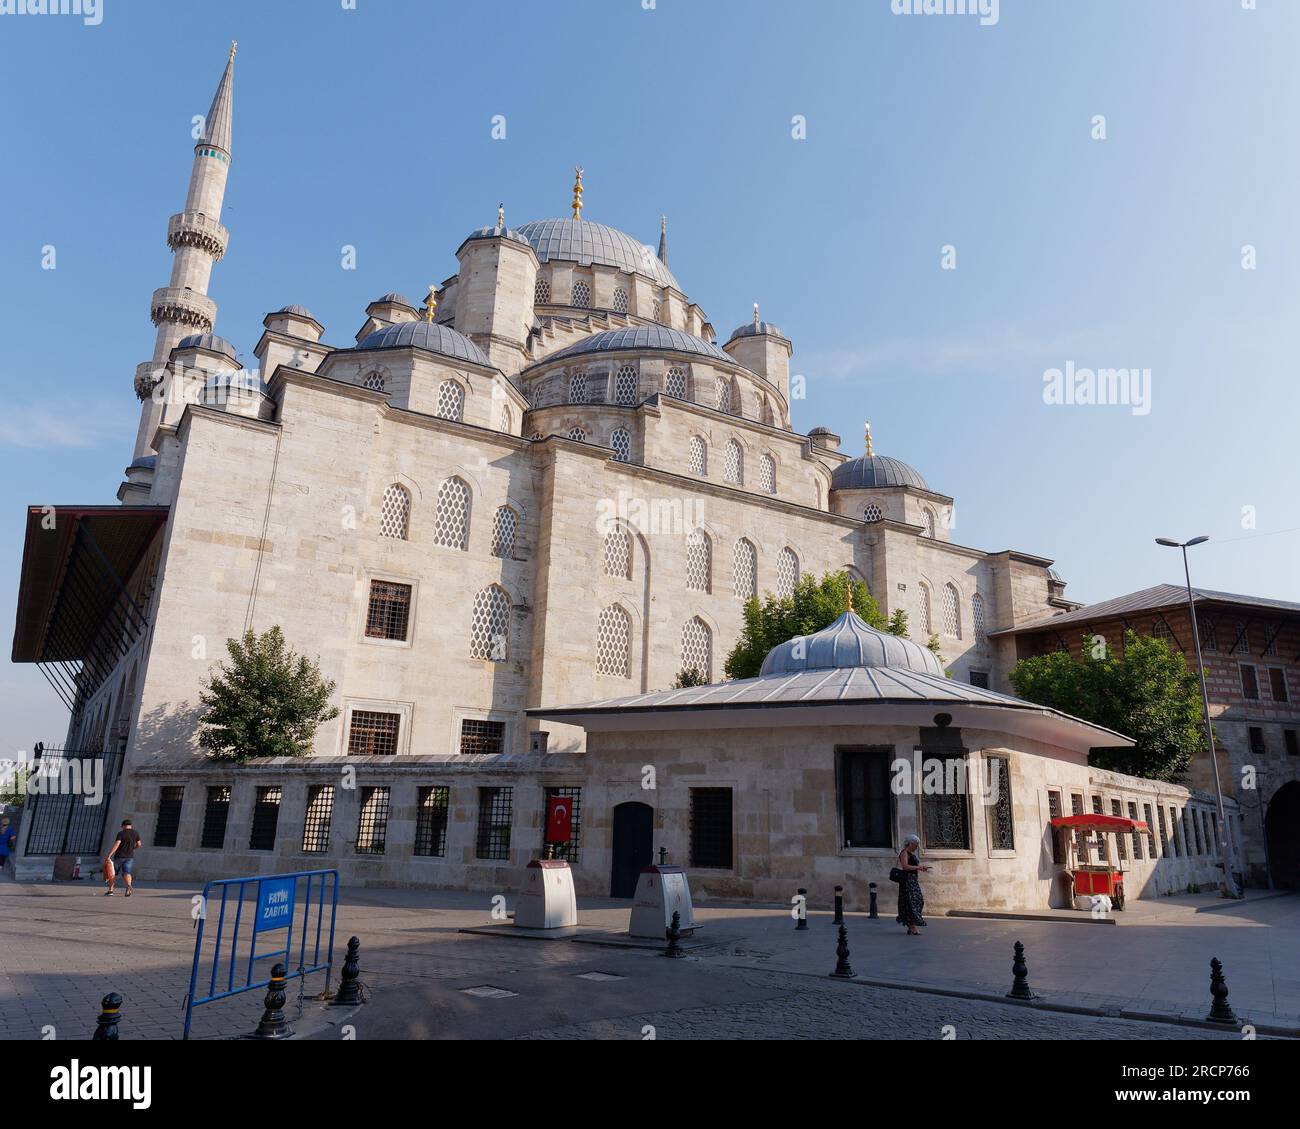 Mosquée Yeni Cami (Nouvelle Mosquée) un matin d'été avec un chariot distributeur rouge, Istanbul, Turquie Banque D'Images